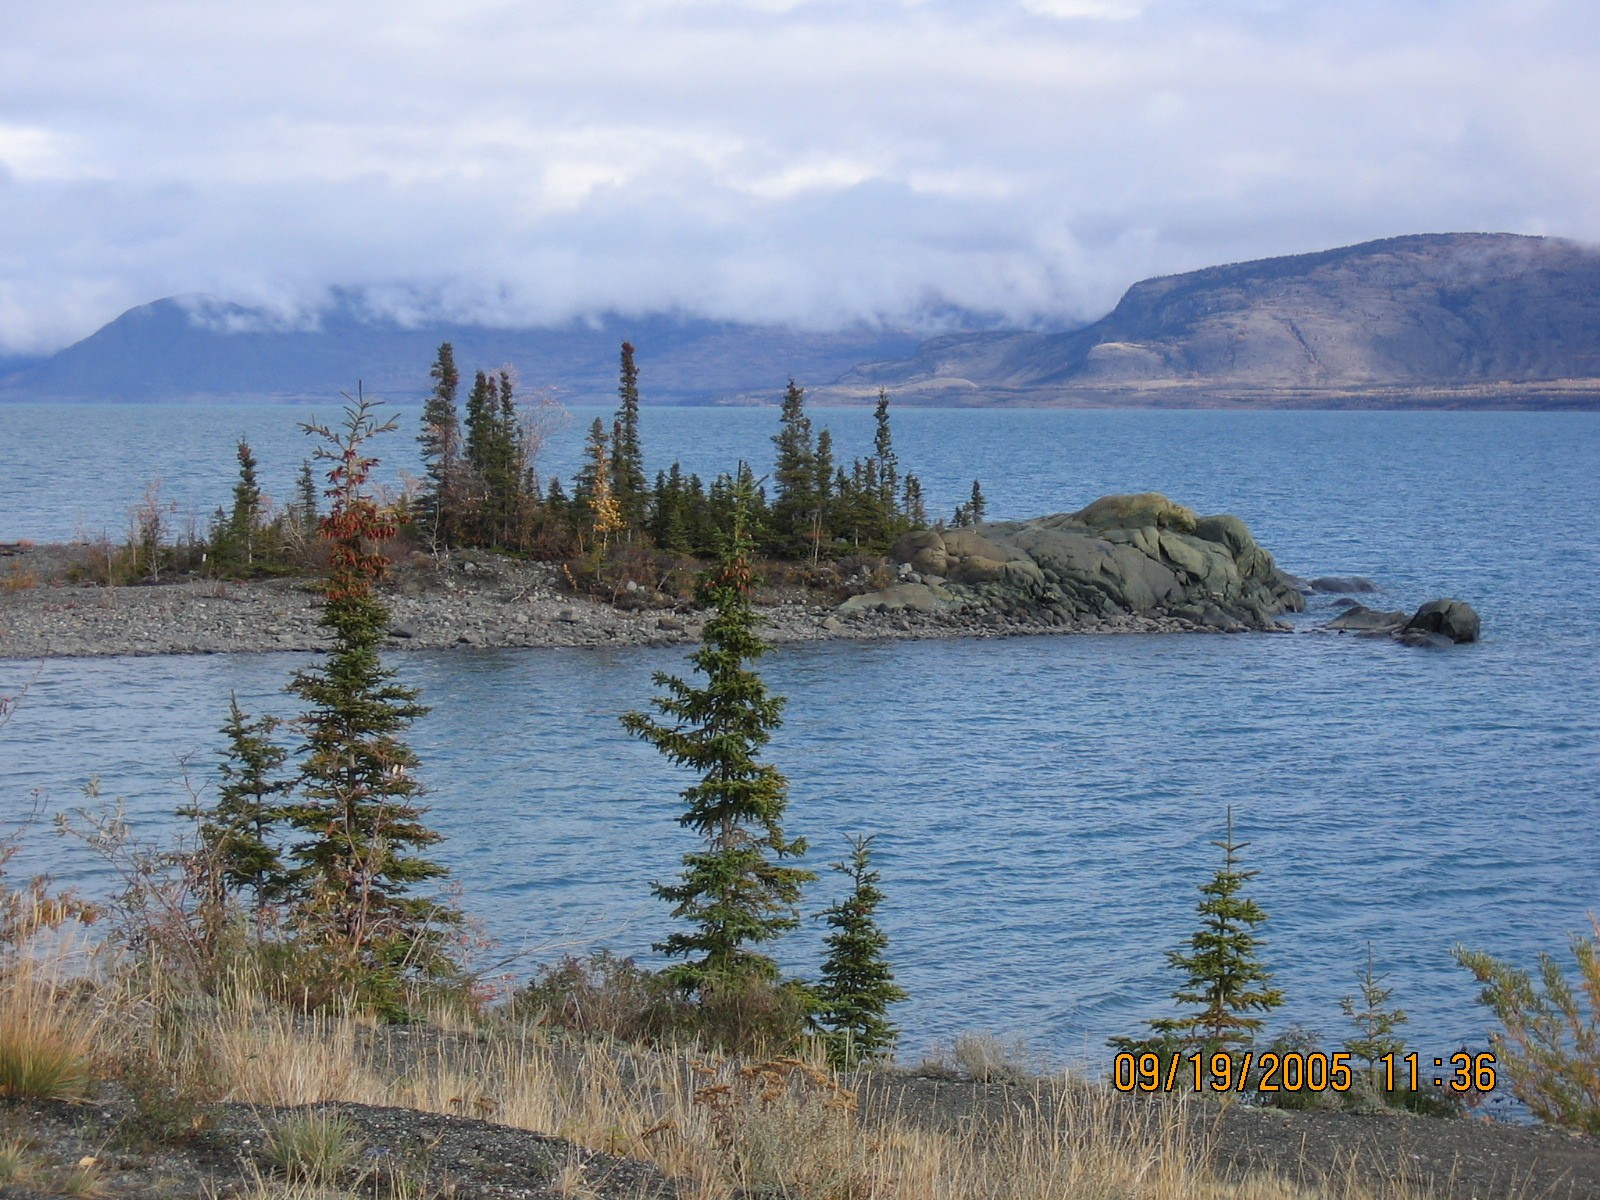 Kluane Lake, Yukon Territory, Canada. Wikimedia: https://commons.wikimedia.org/wiki/File:Kluane_Lake_YT_2005.jpg